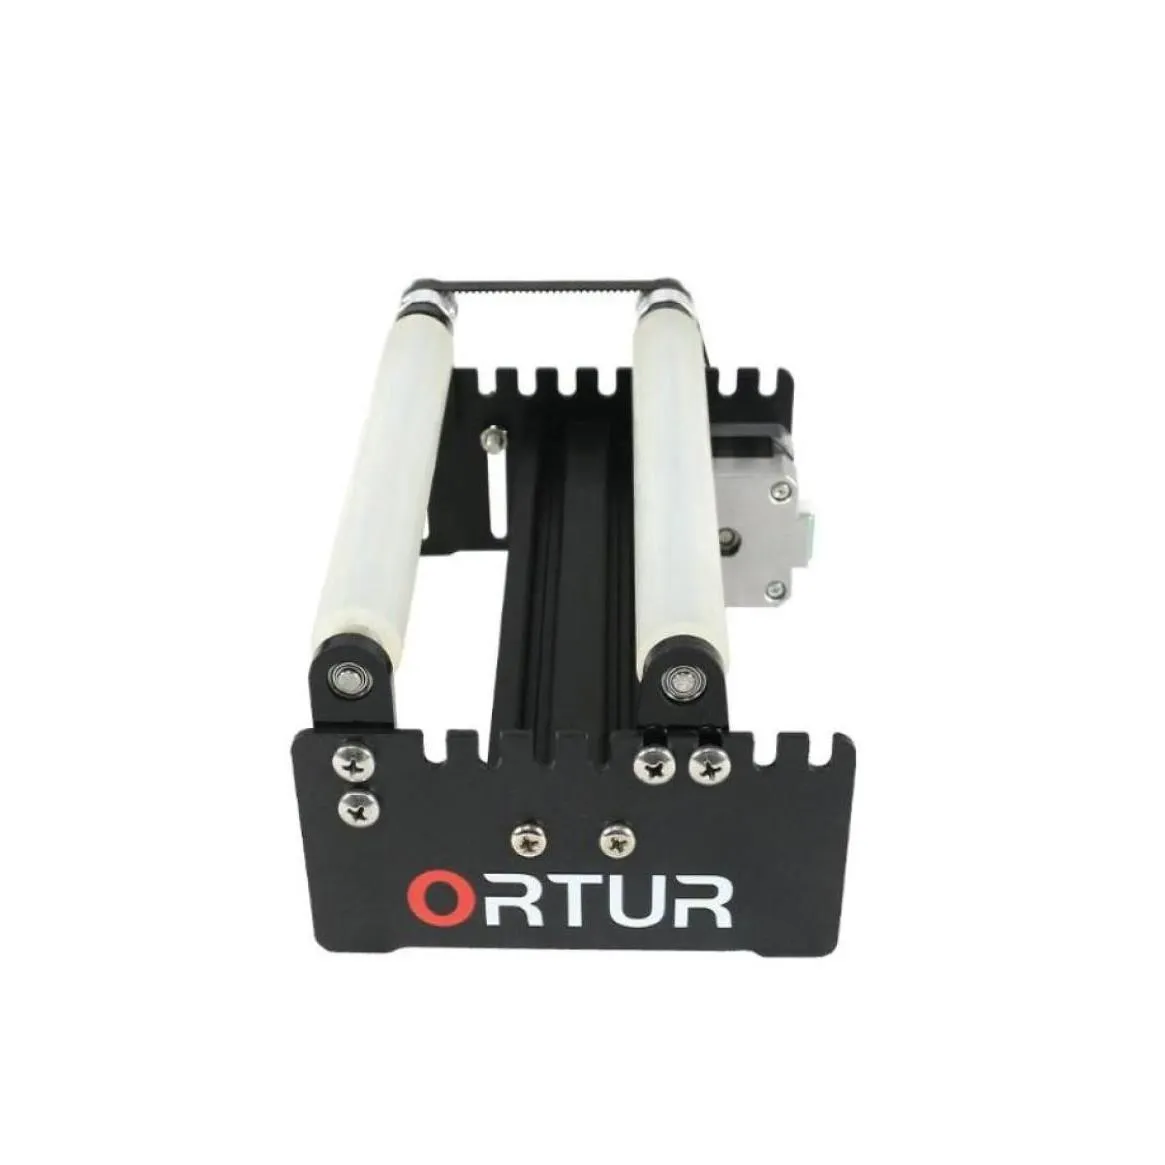 Impressoras 2021 Vendendo Ortur 3D Impressora Laser Gravador Yaxis Modo de Gravação de Rolo Rotativo para Objetos Cilíndricos Cans3318560 Drop Deli Otdvq